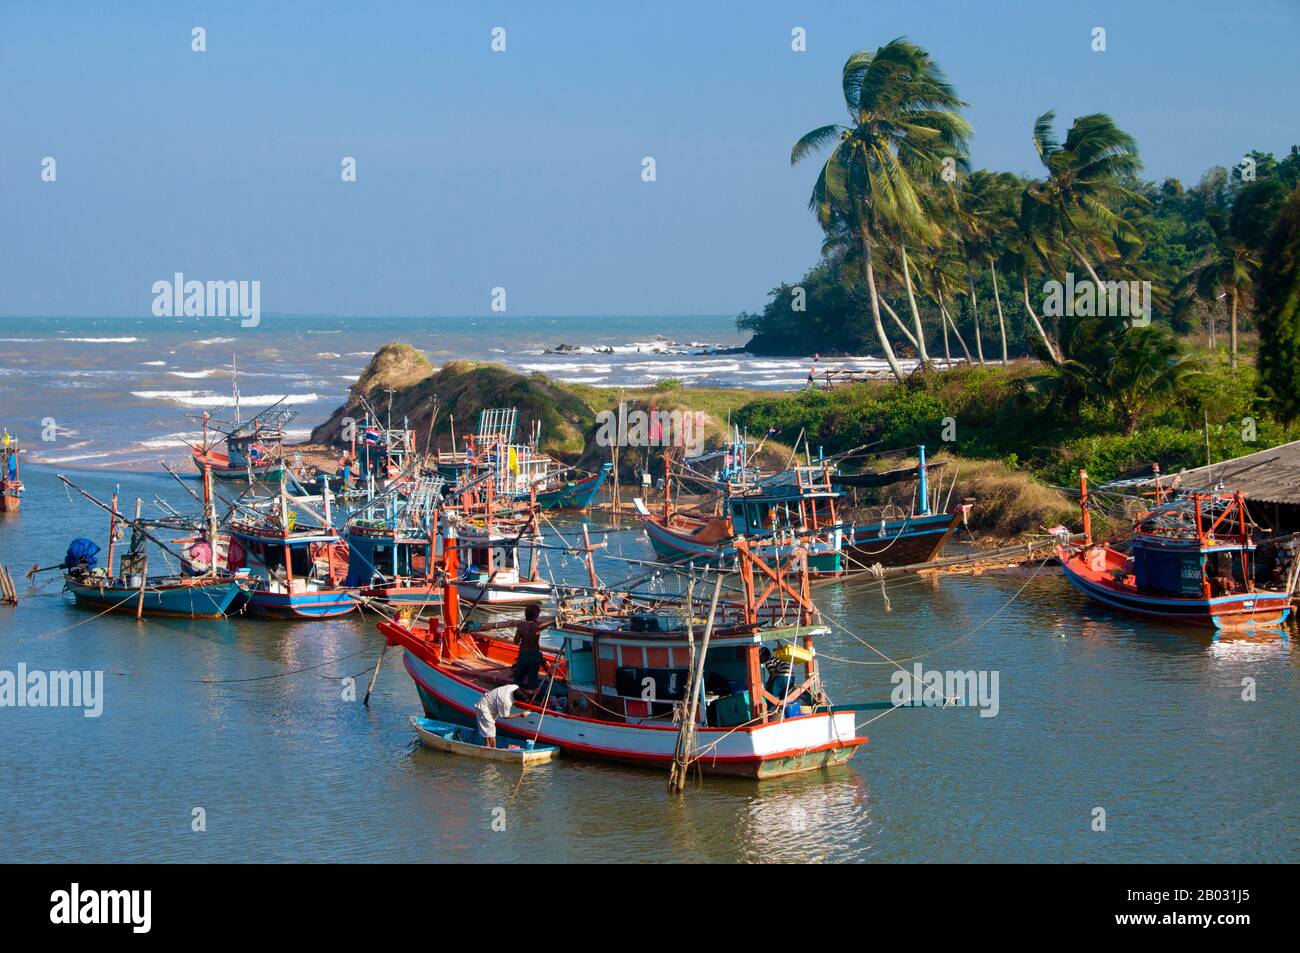 Innerhalb der Provinz Chumphon befindet sich der beste und beliebteste Strand am hat Thung Wua Laen, etwa 16 km südlich des Distrikts Pathiu und eine ähnliche Entfernung nördlich der Stadt Chumphon. Hut Thung Wua Laen ist ein langer, weisser Sandstrand, der sanft zu den Gewässern des Golfs von Thailand abfällt. Es ist vor allem bei einheimischen thailändischen Touristen beliebt und zieht dennoch mehr Besucher aus Übersee, weil es keine Menge gibt, vernünftige Preise, authentische thailändische Küche und seine authentische thailändische Atmosphäre. Hat Thung Wua Laen hat auch das beste Schnorcheln vor der Provinz Chumphon, mit Korallenriffen, die Seefans unterstützen, m Stockfoto